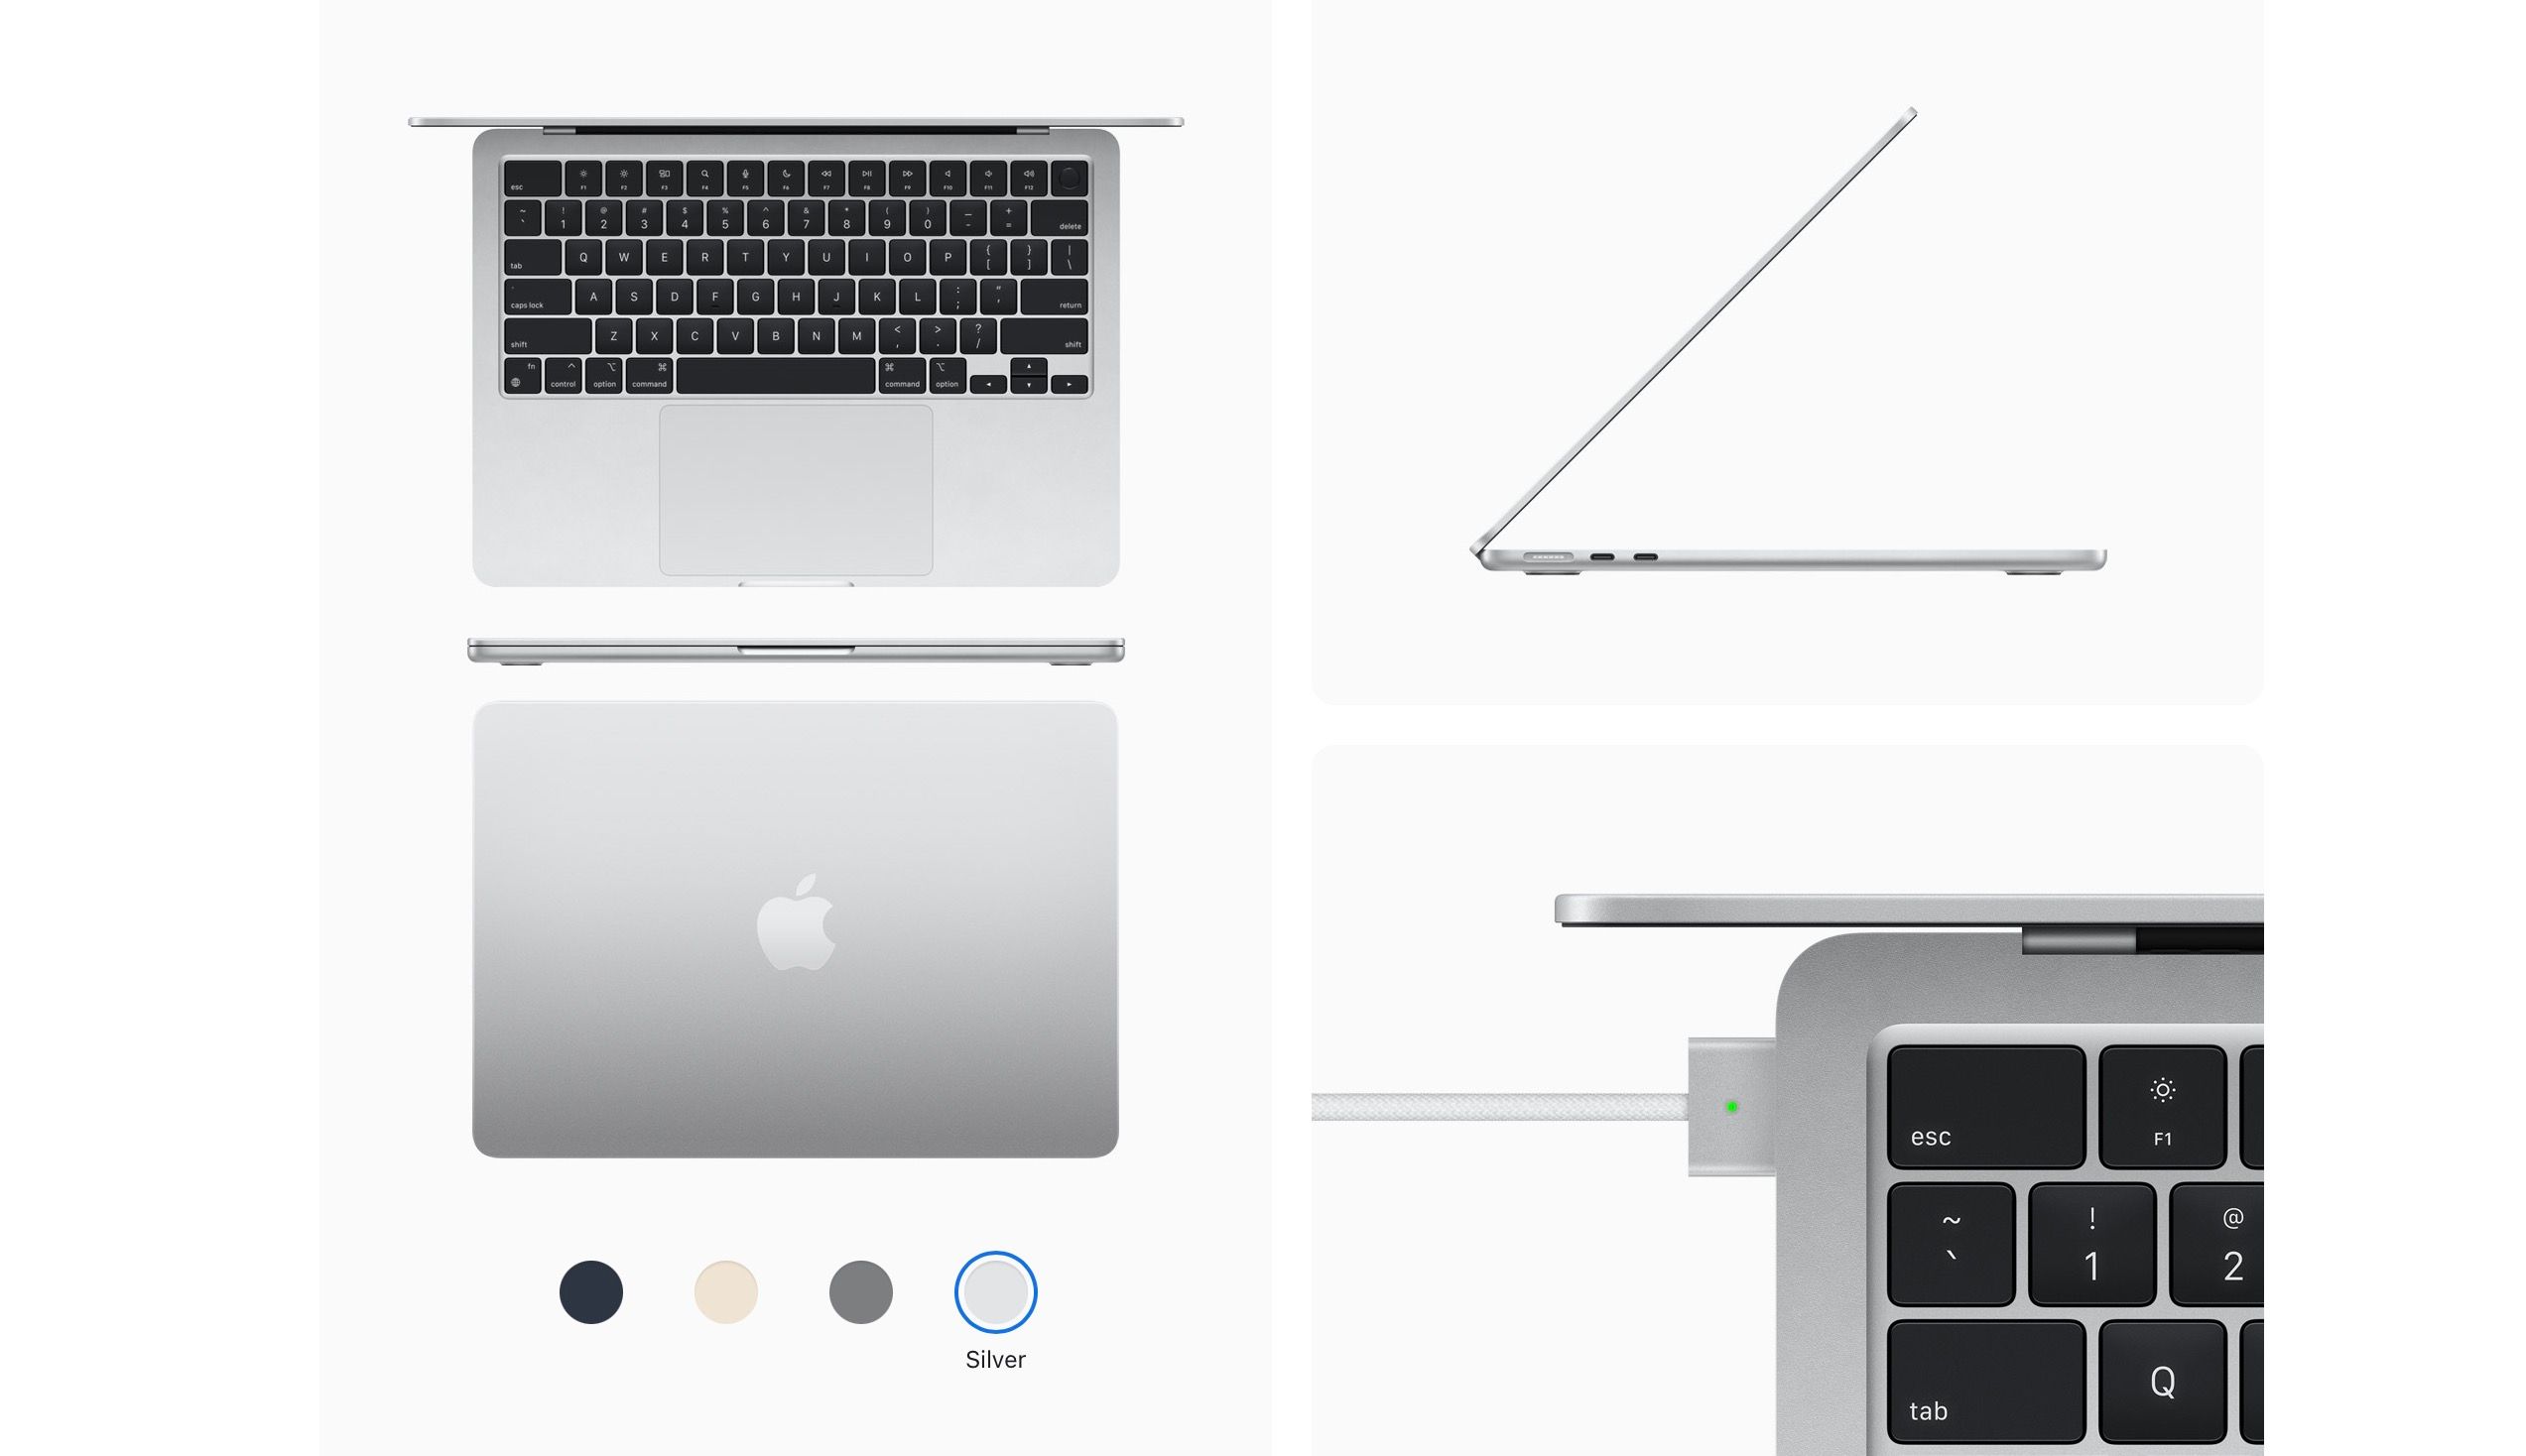 M2 MacBook Air in Silver on Apple's website